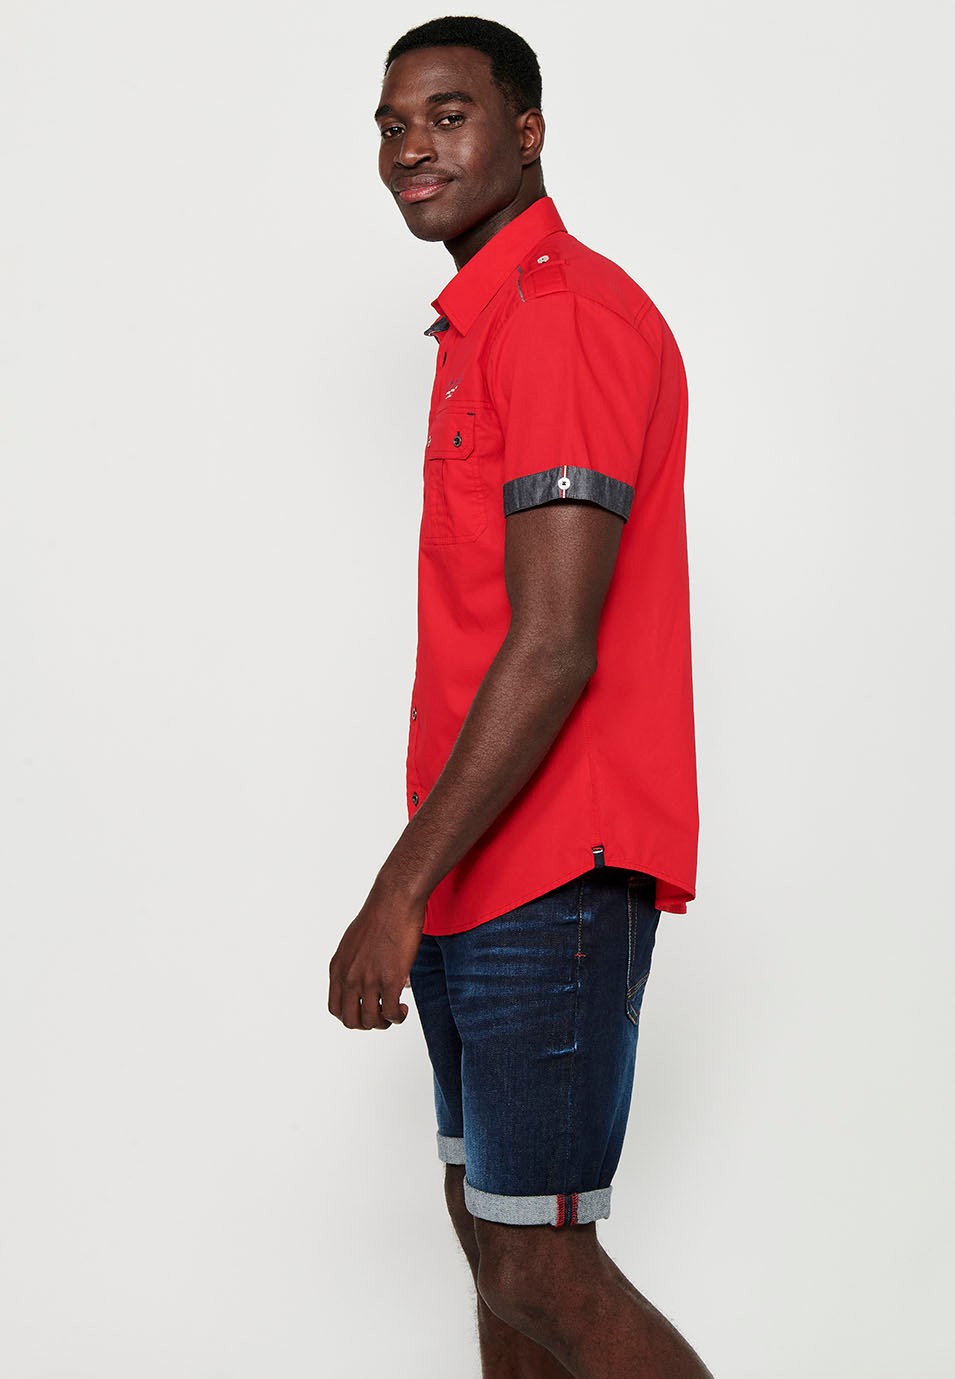 Cotton shirt, short sleeve, shoulder details, red color for men